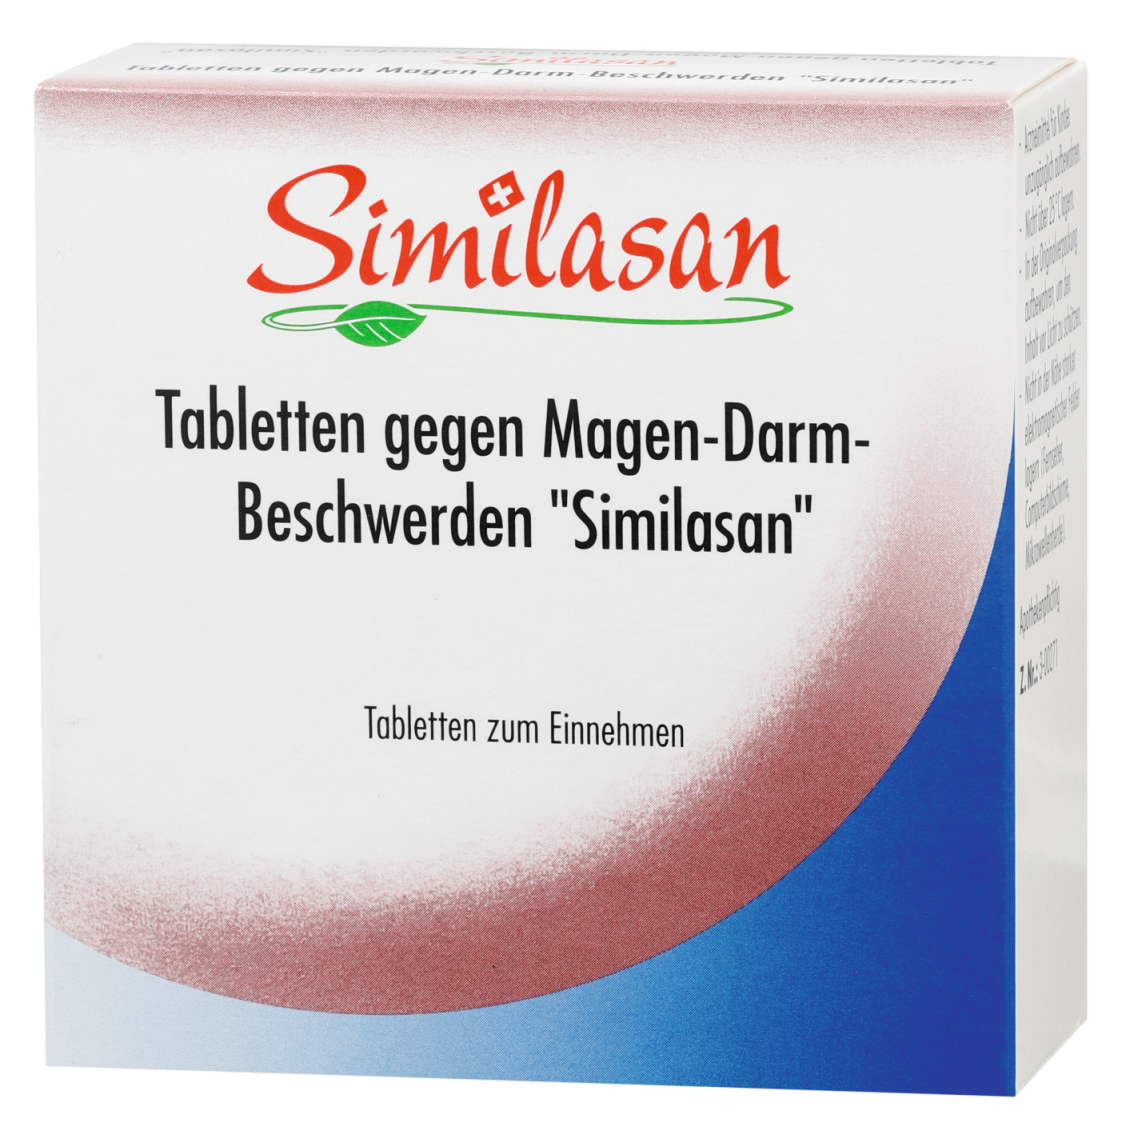 Abbildung Tabletten gegen Magen-Darm-Beschwerden "Similasan"